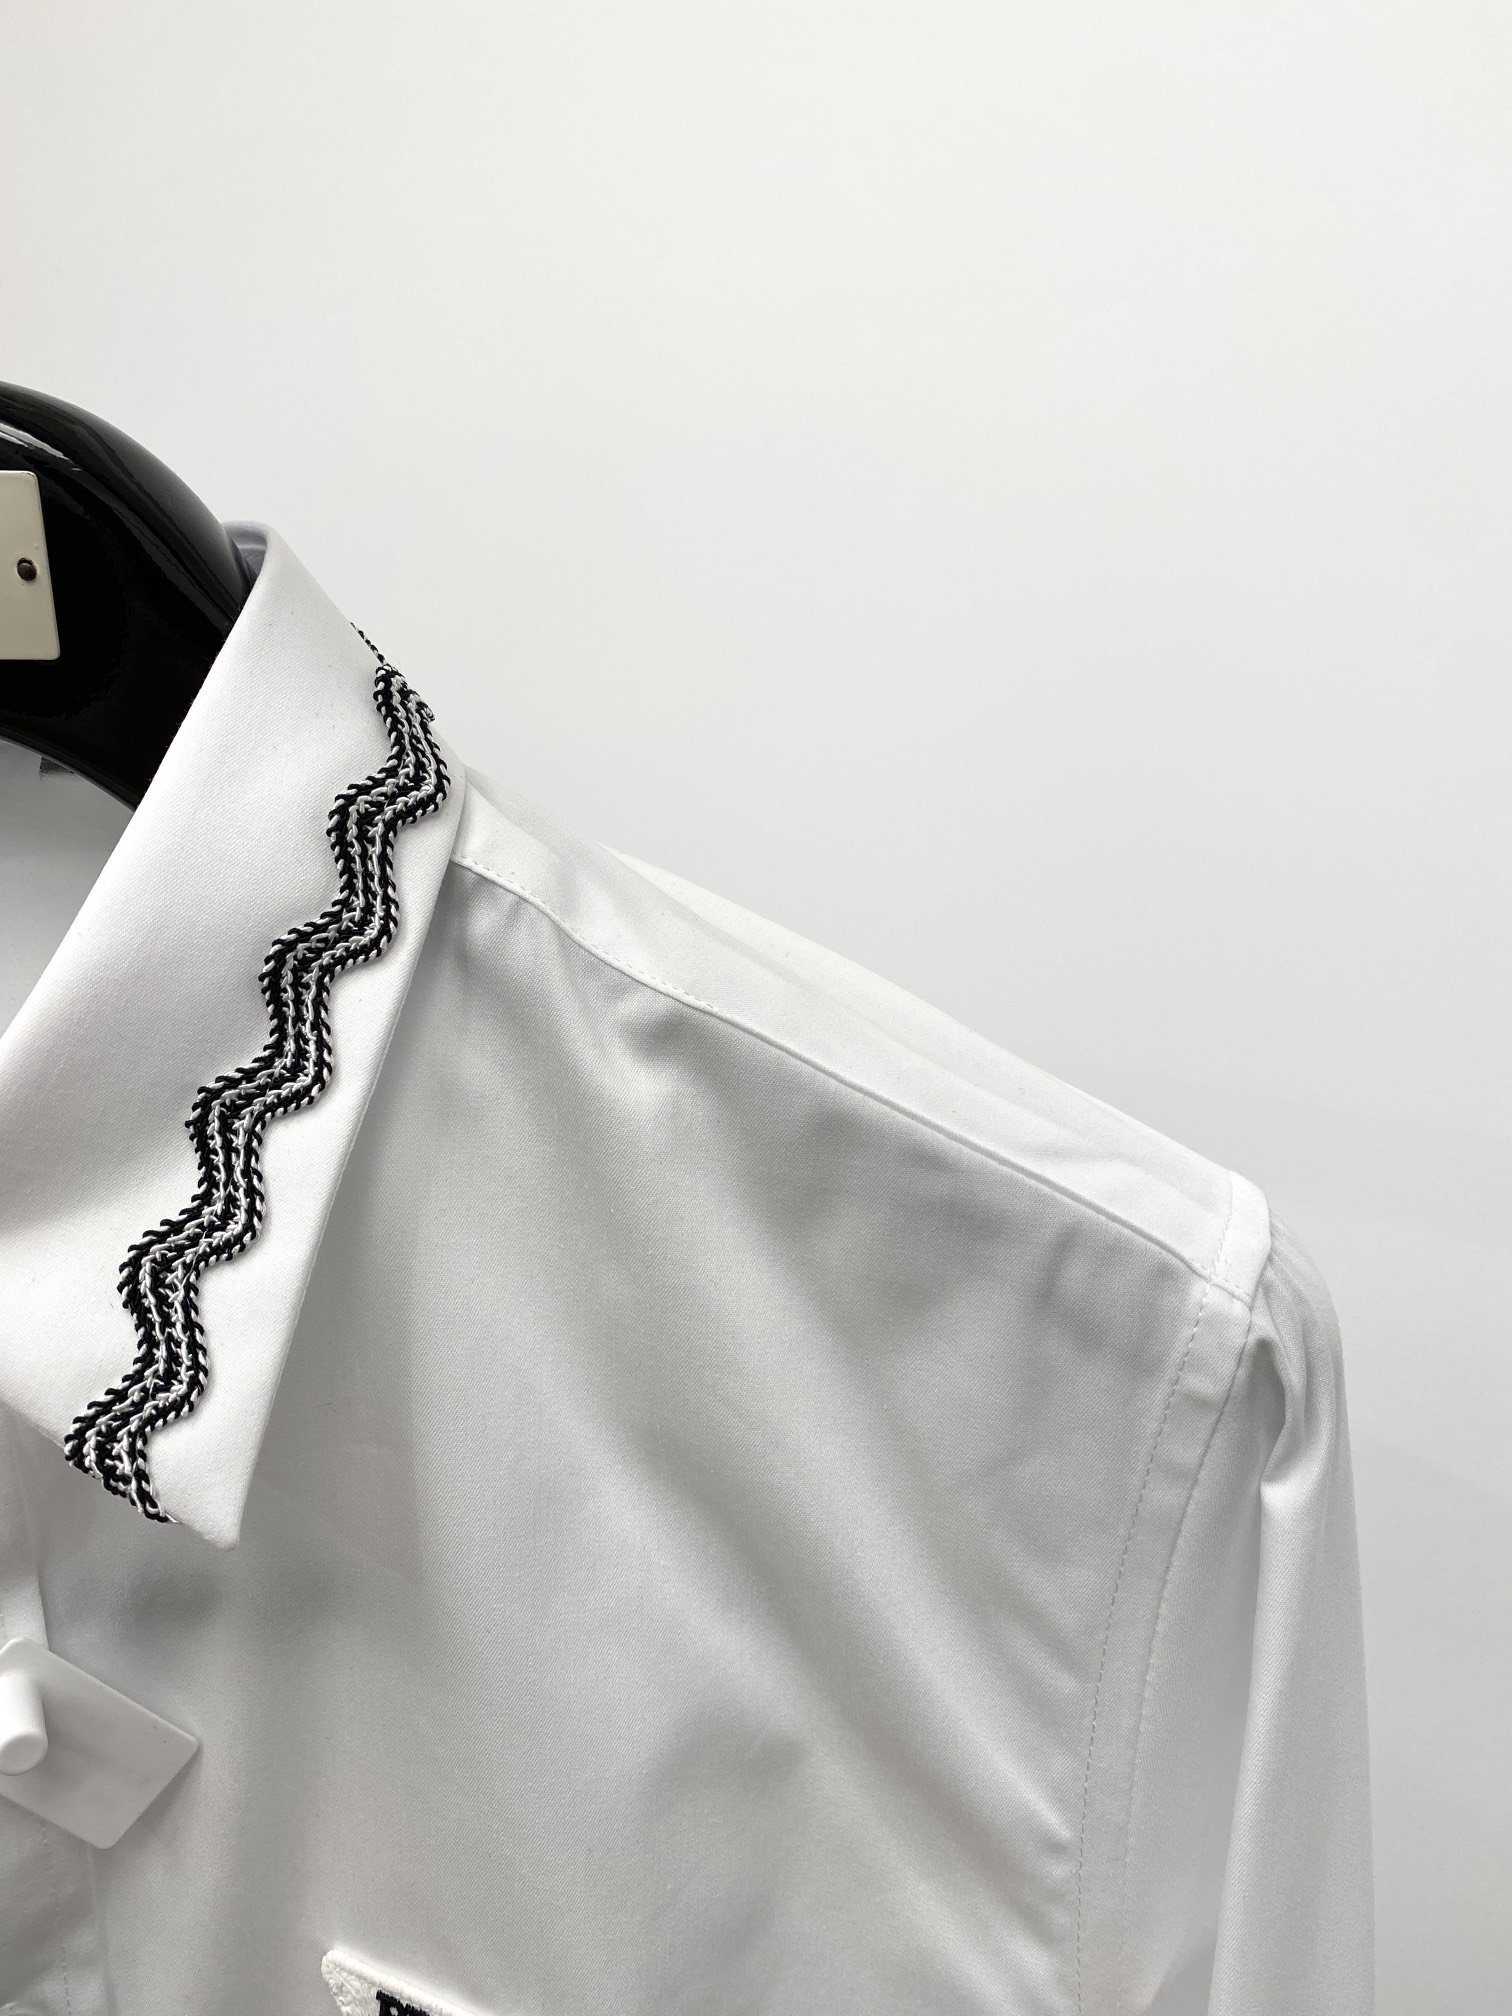 普拉达2024新款衬衫打造时装艺术感立体剪裁修身版型上身效果很帅气微彰显品位整体细节可以对比效果非常有型